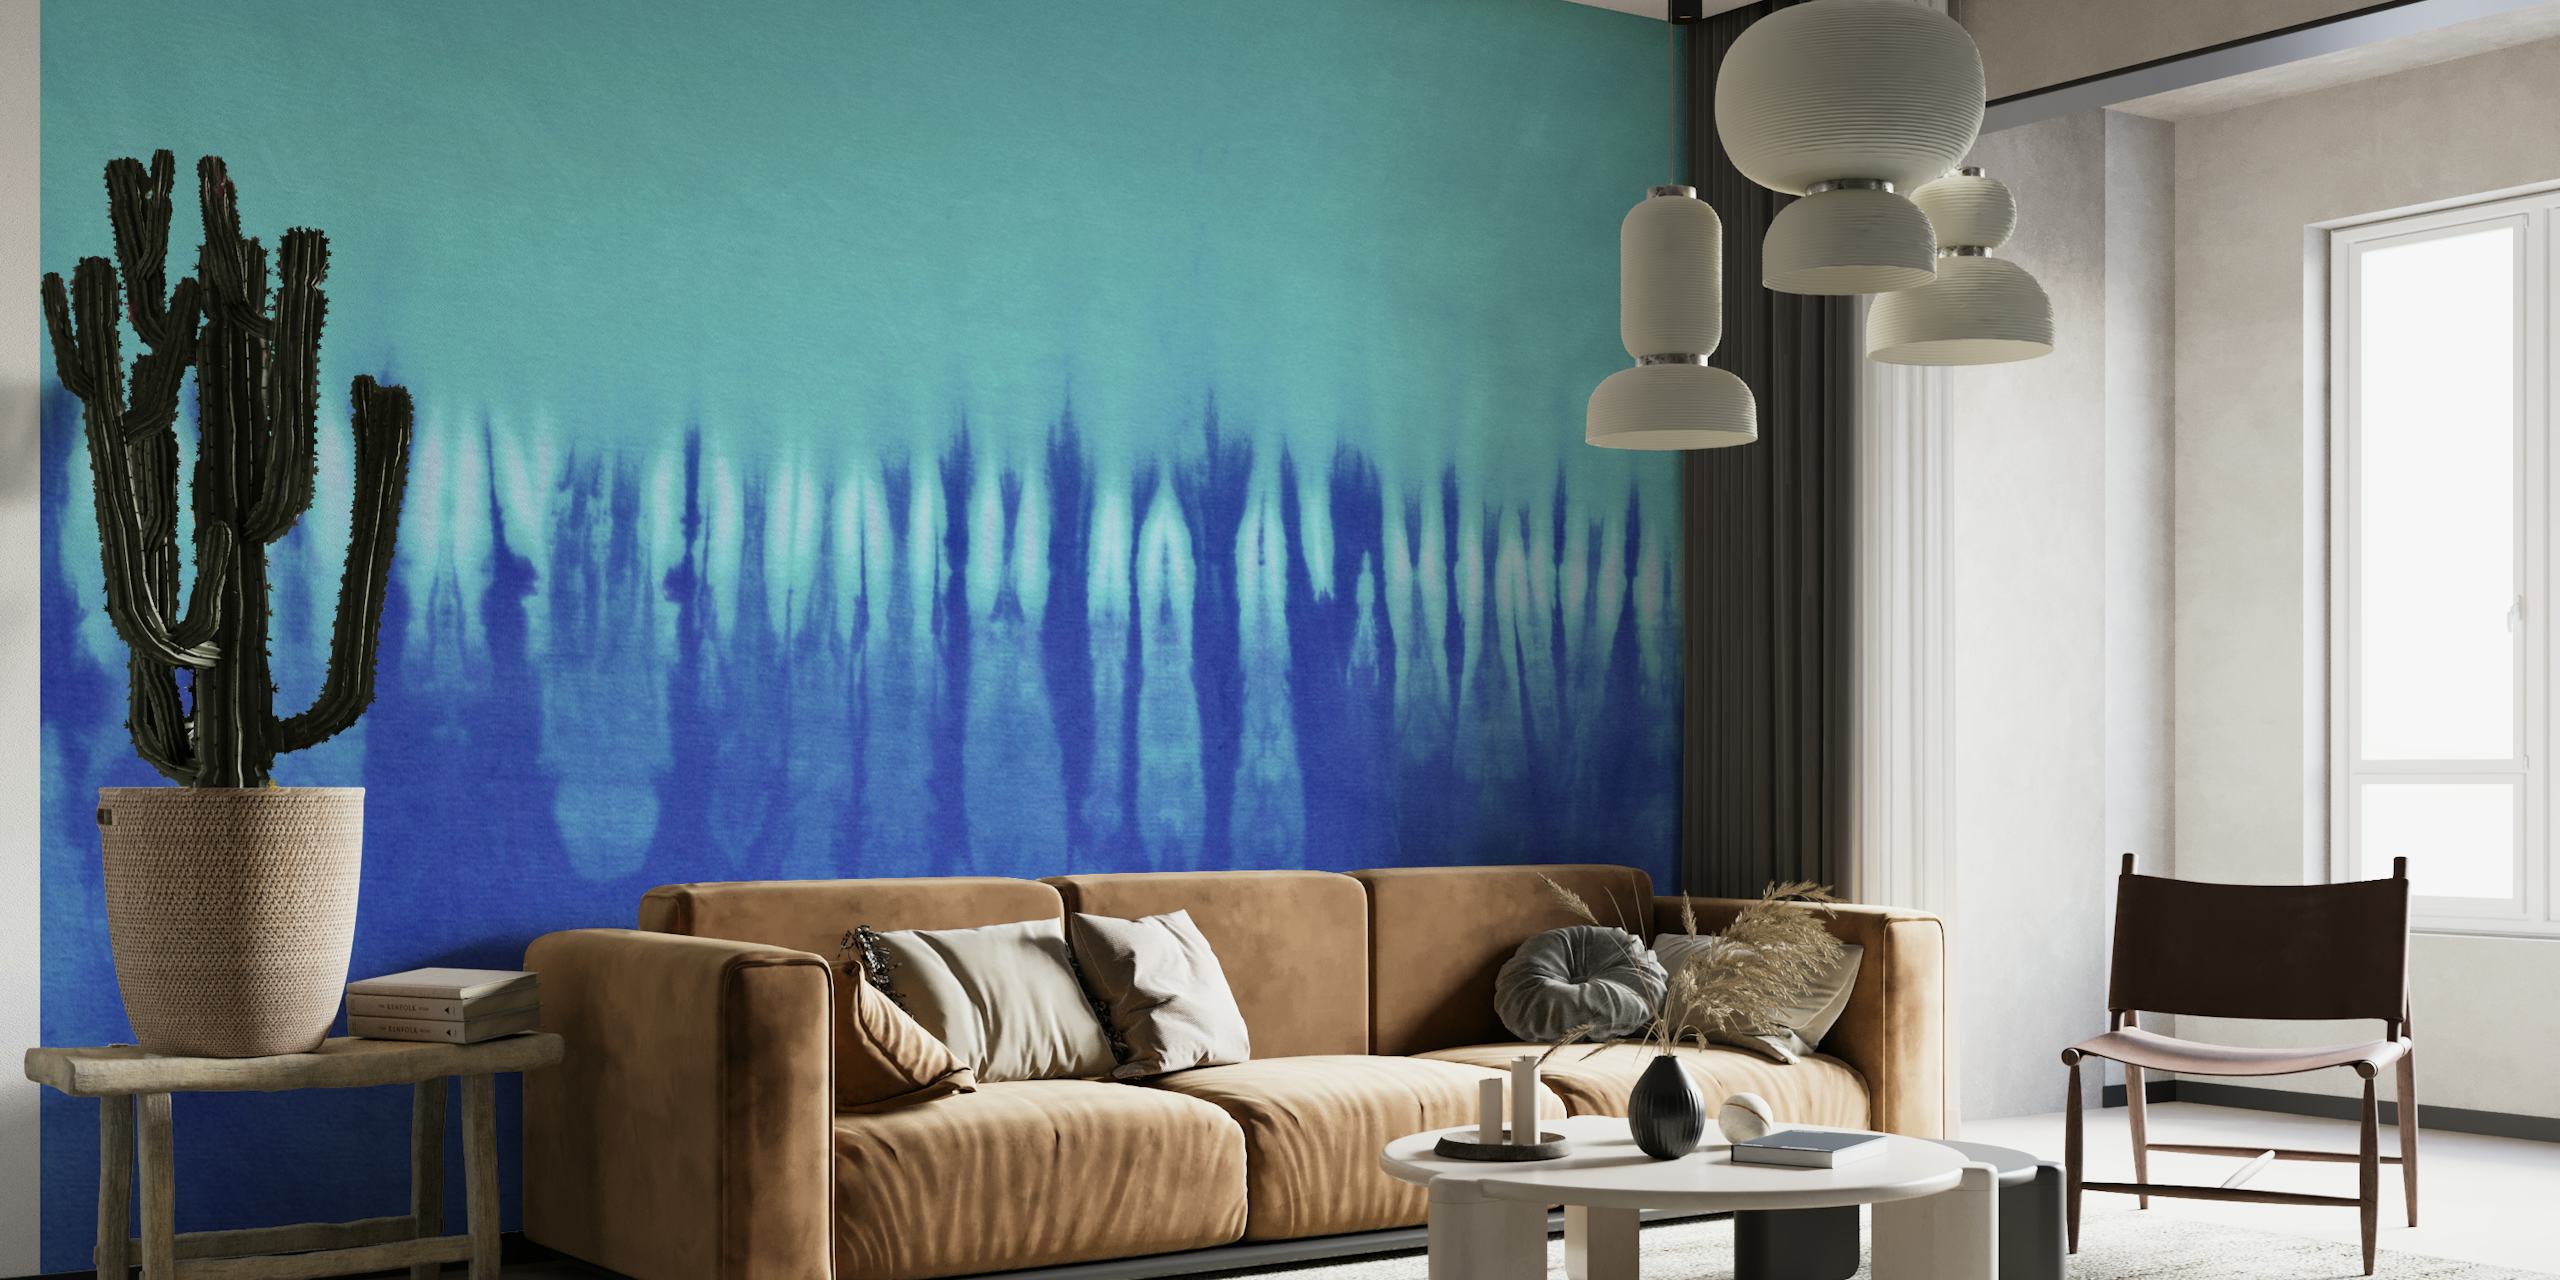 Blue tie dye wallpaper